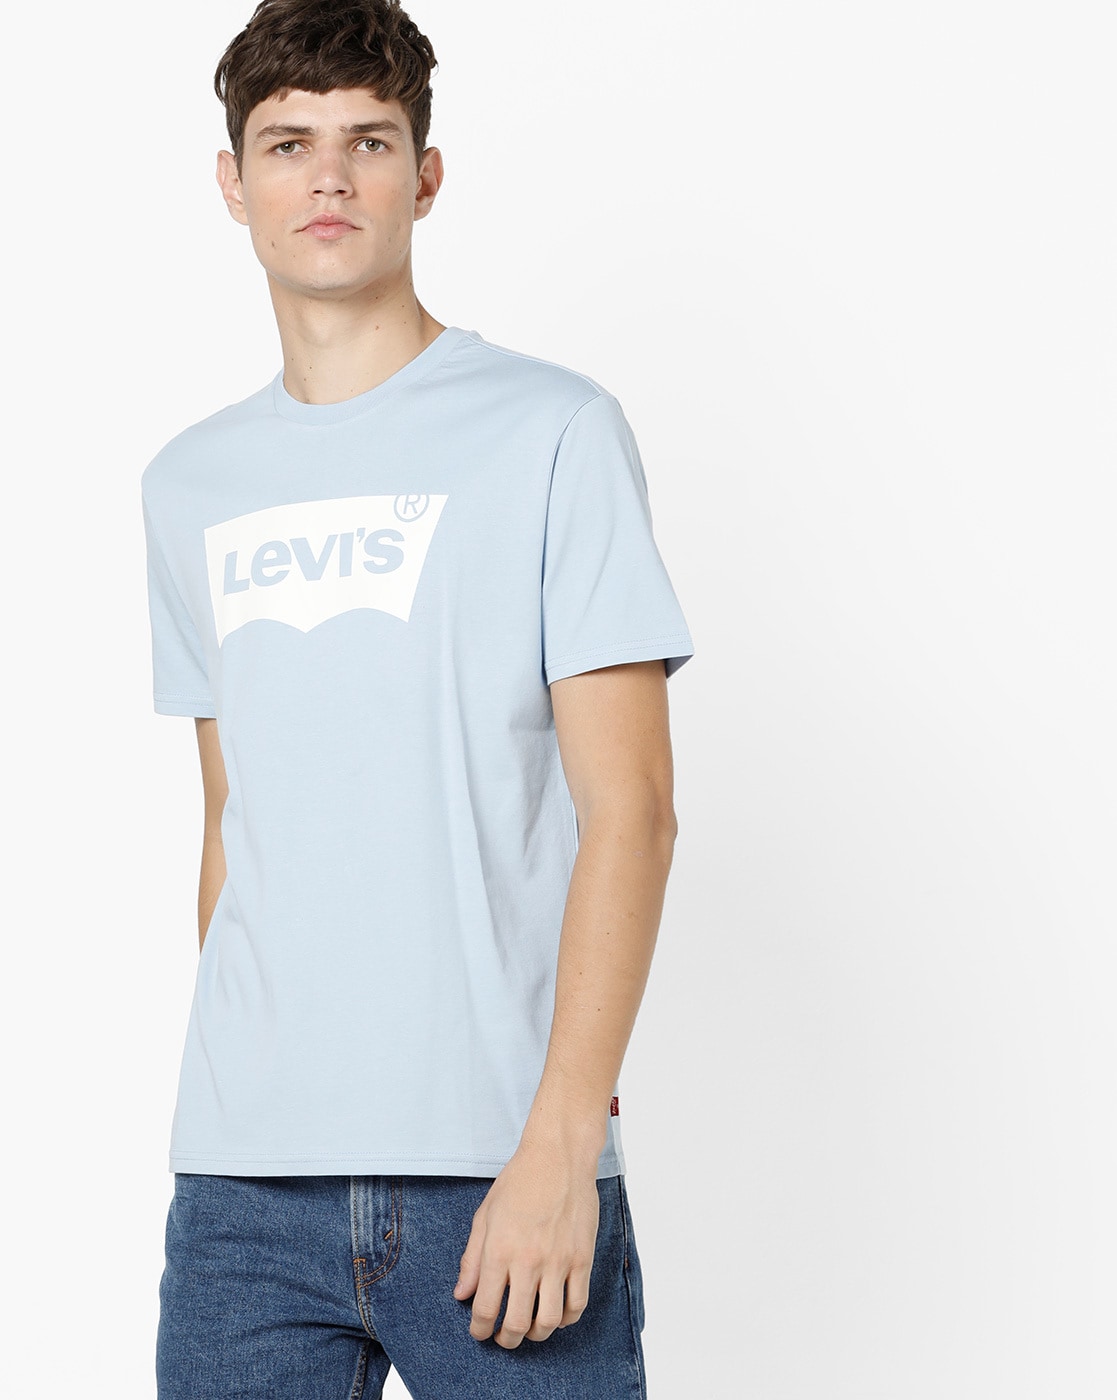 levis light blue shirt